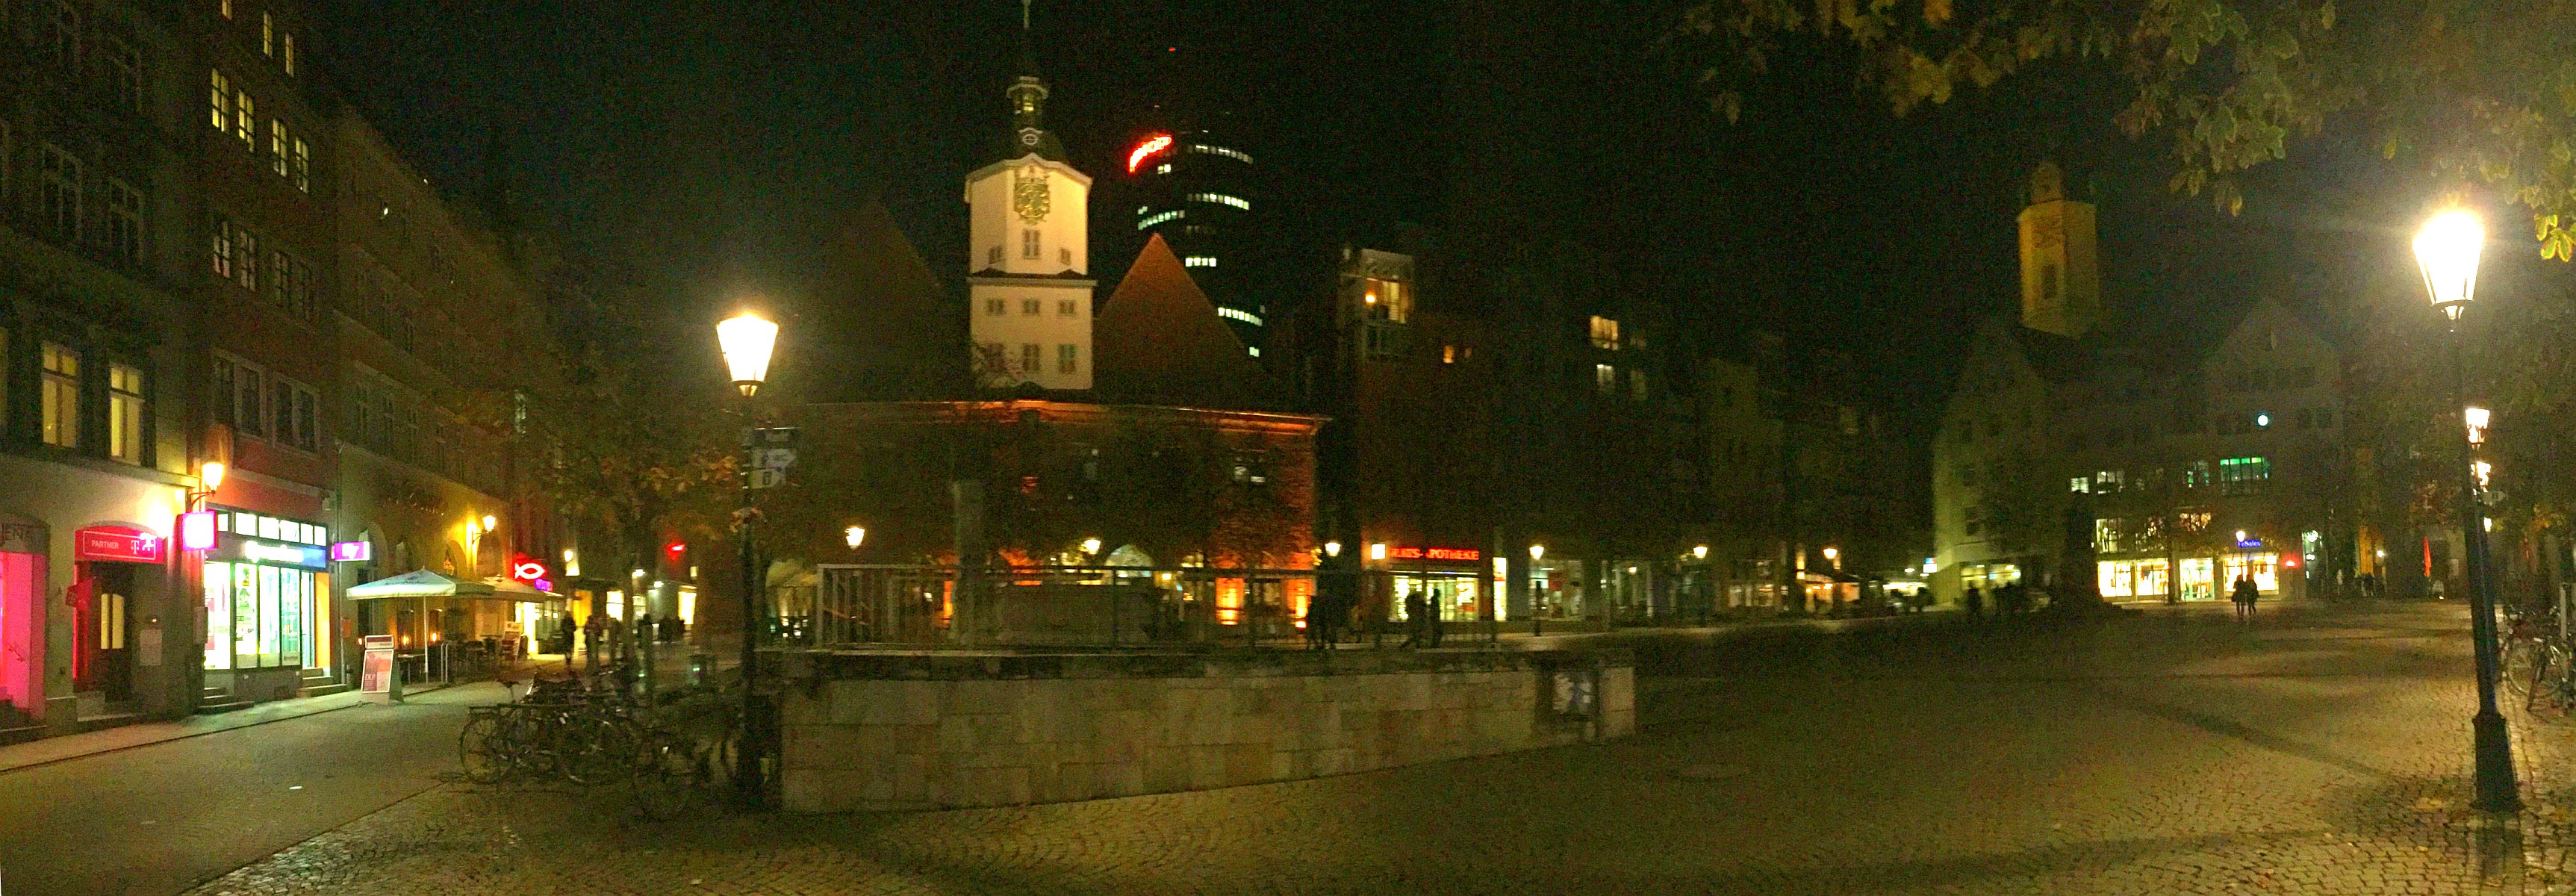 jezt-jenas-historischer-marktplatz-bei-nacht-3450-x-1200-panoramafoto-mediapool-jena